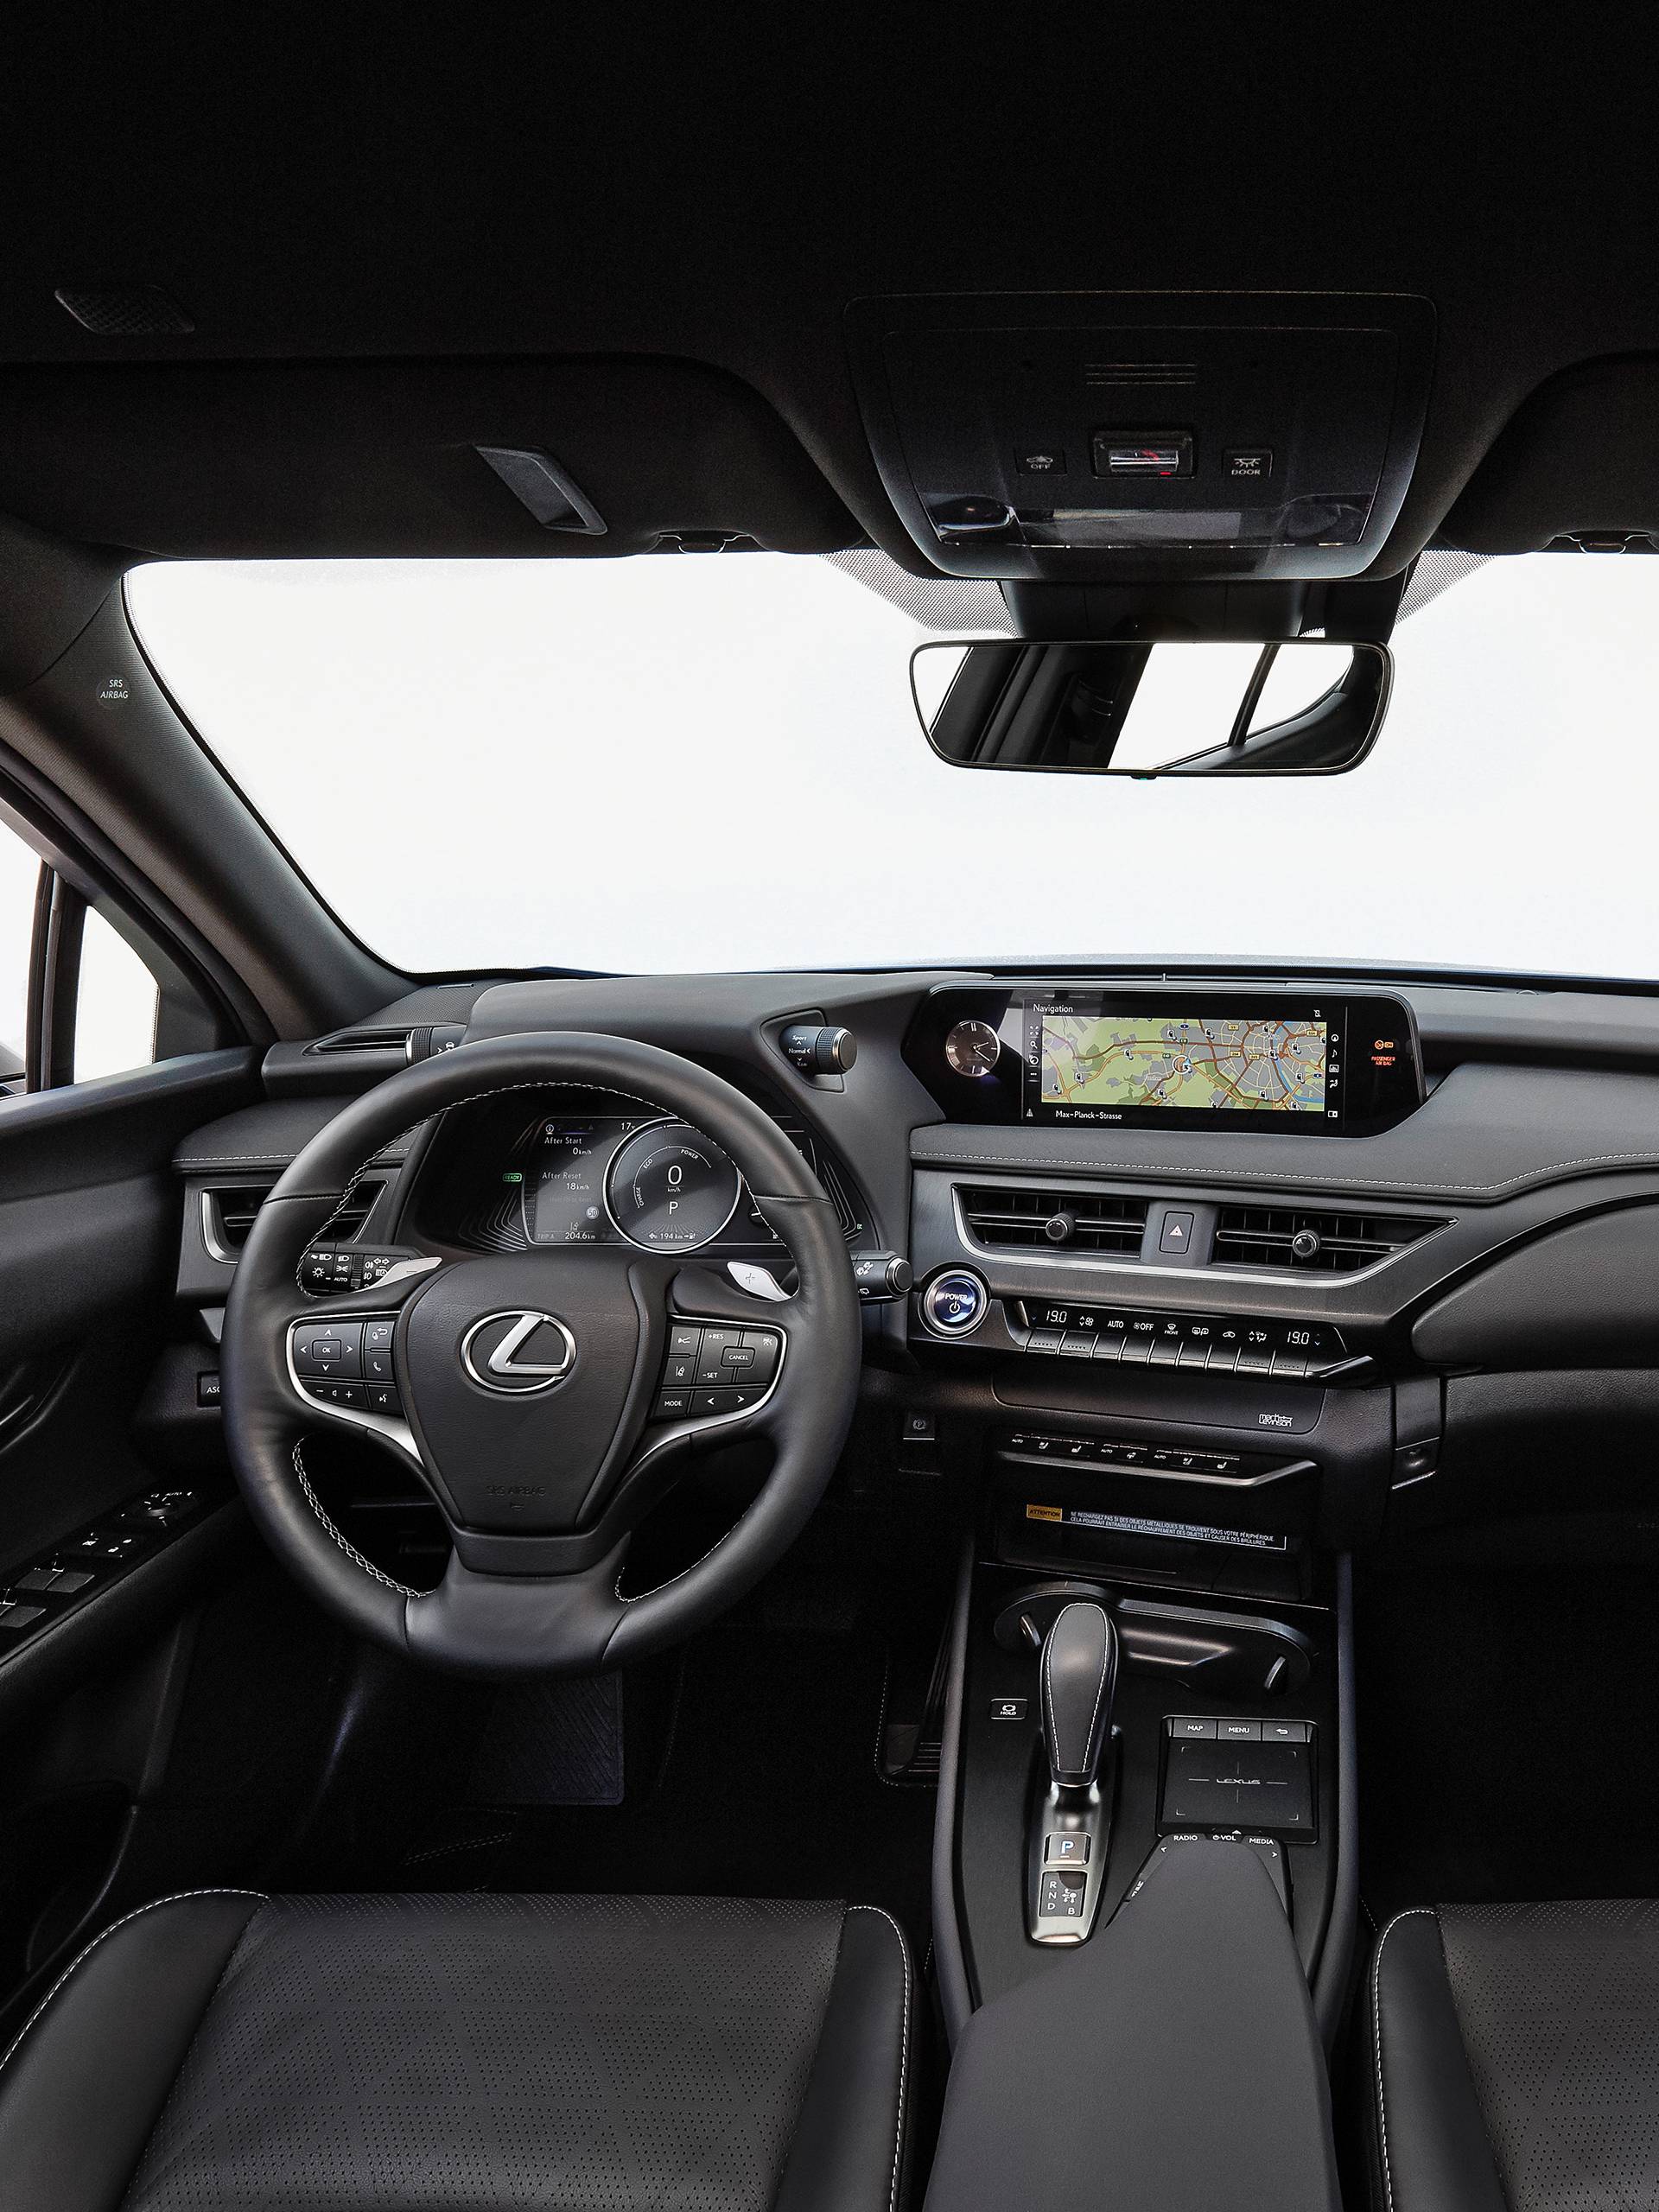 Električni Lexus s jamstvom na bateriju do milijun kilometara